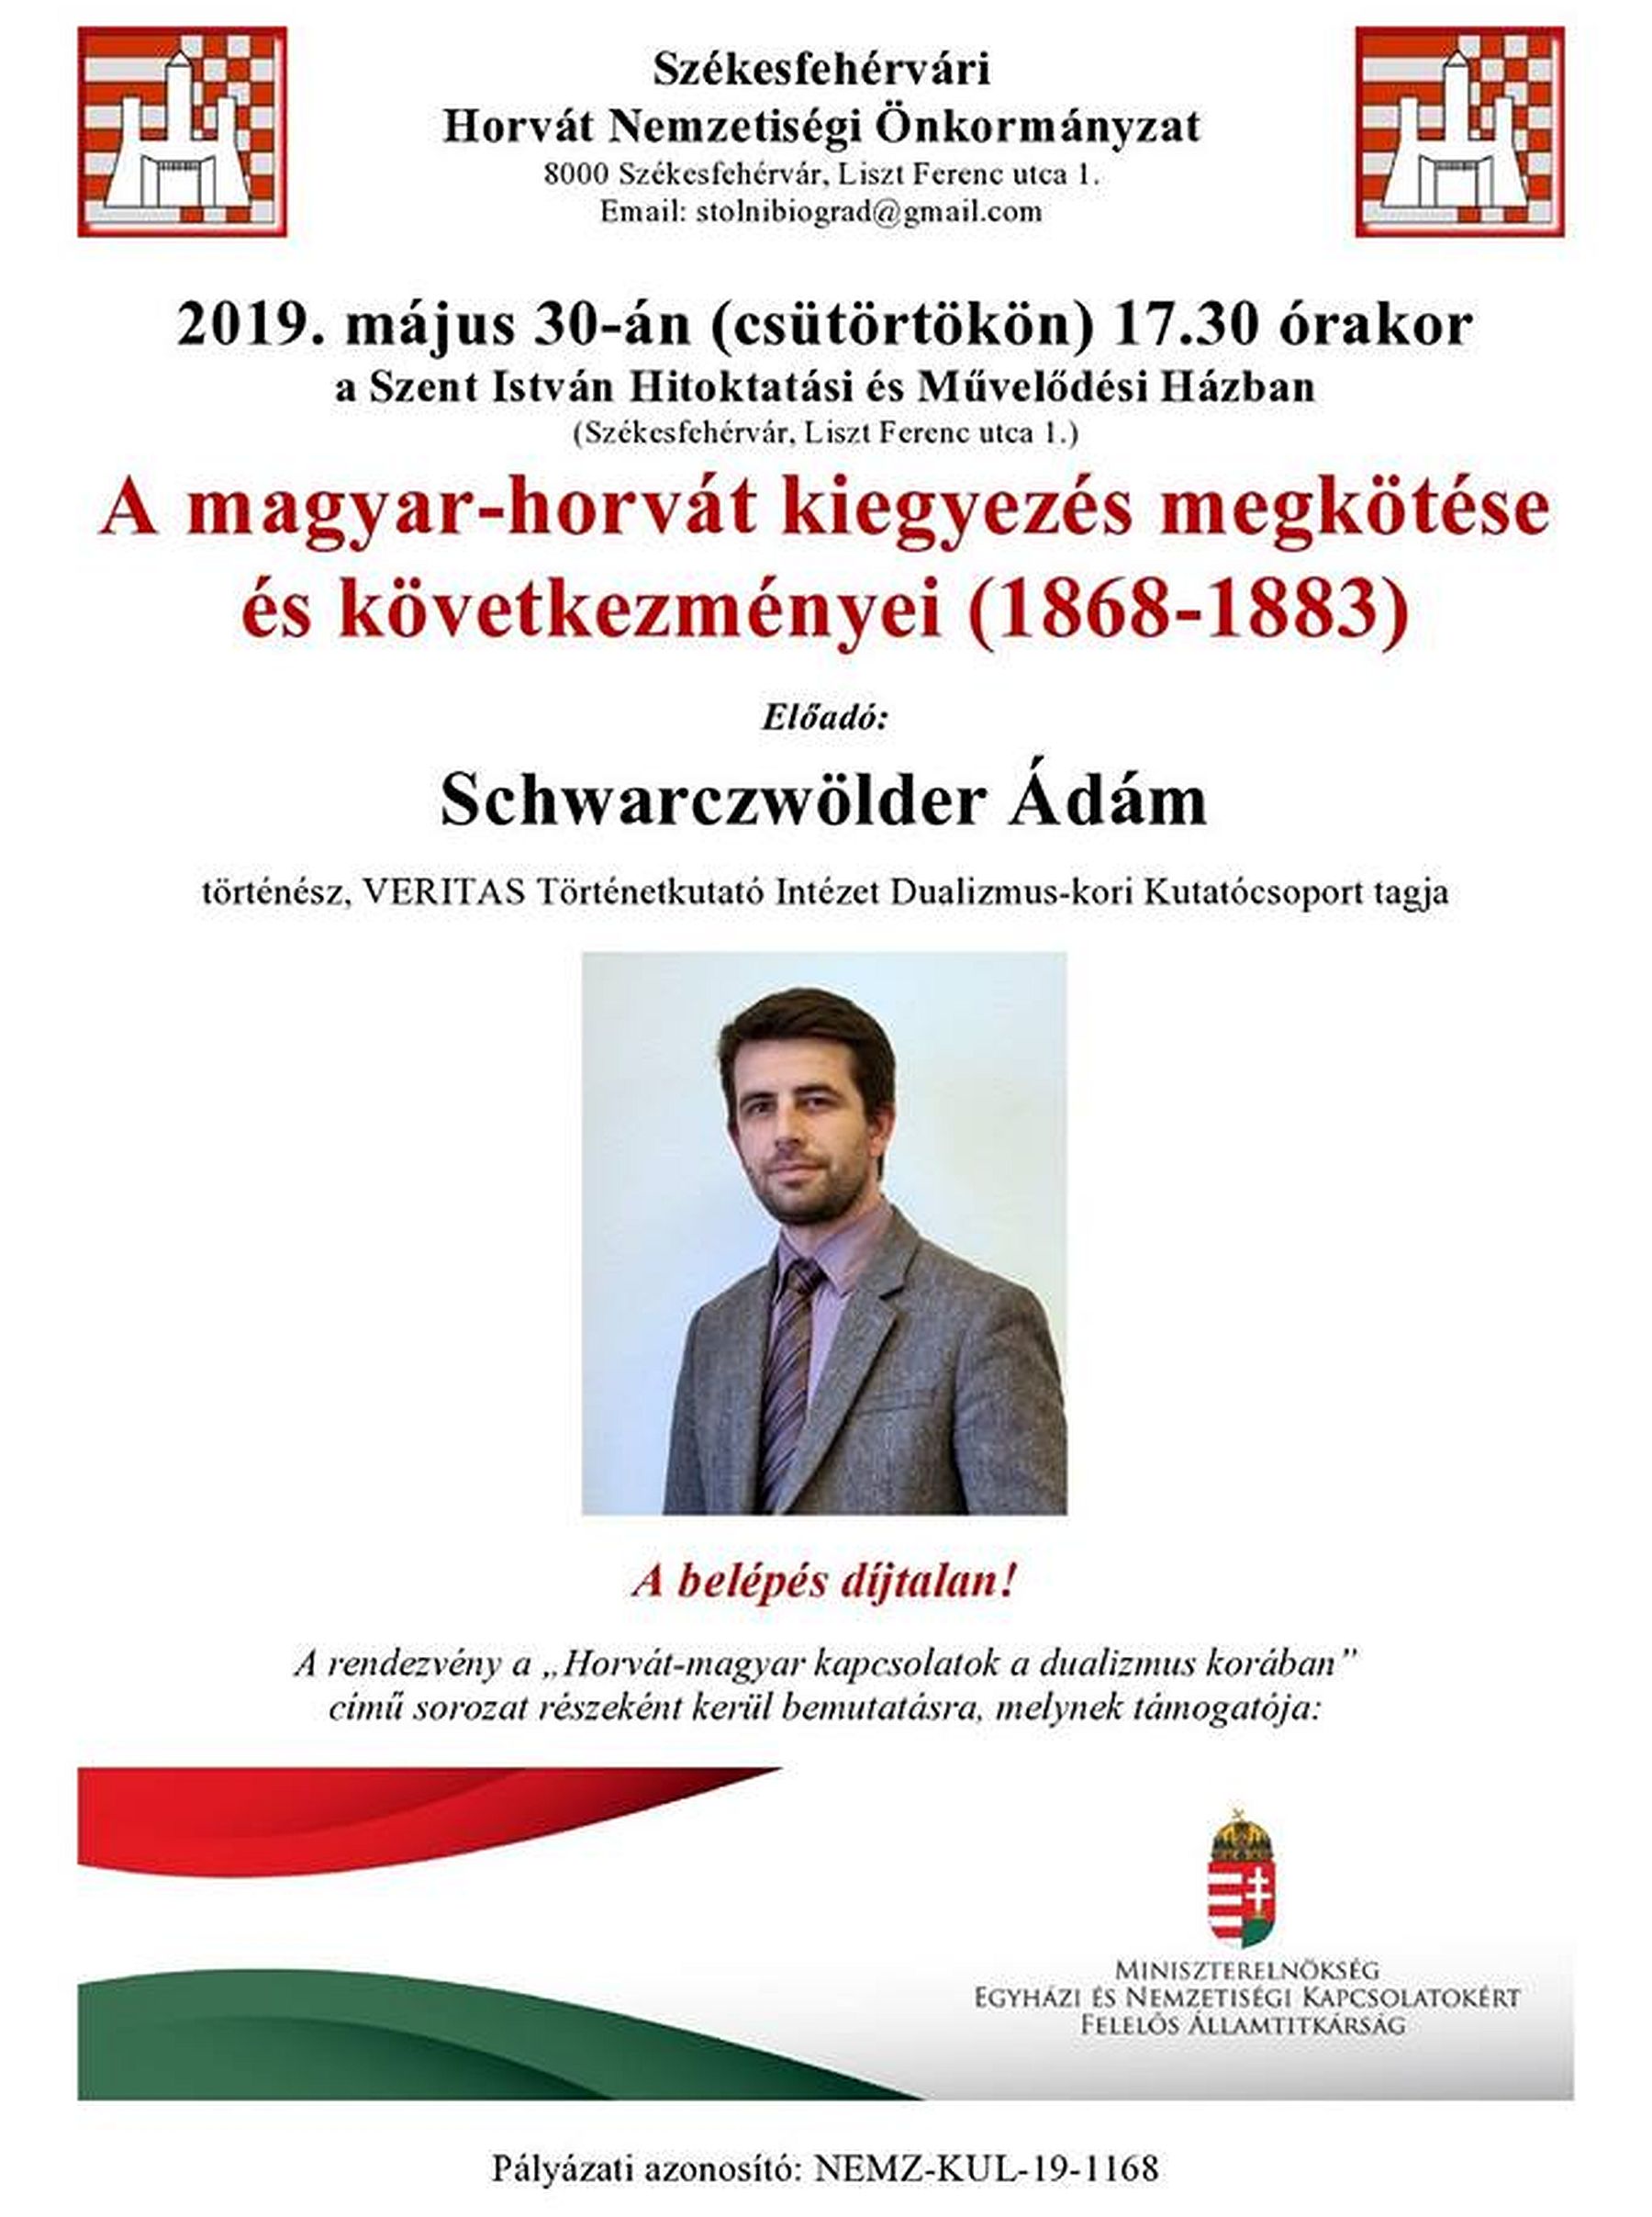 Schwarzwölder Ádám előadása a magyar-horvát kiegyezésről és következményeiről